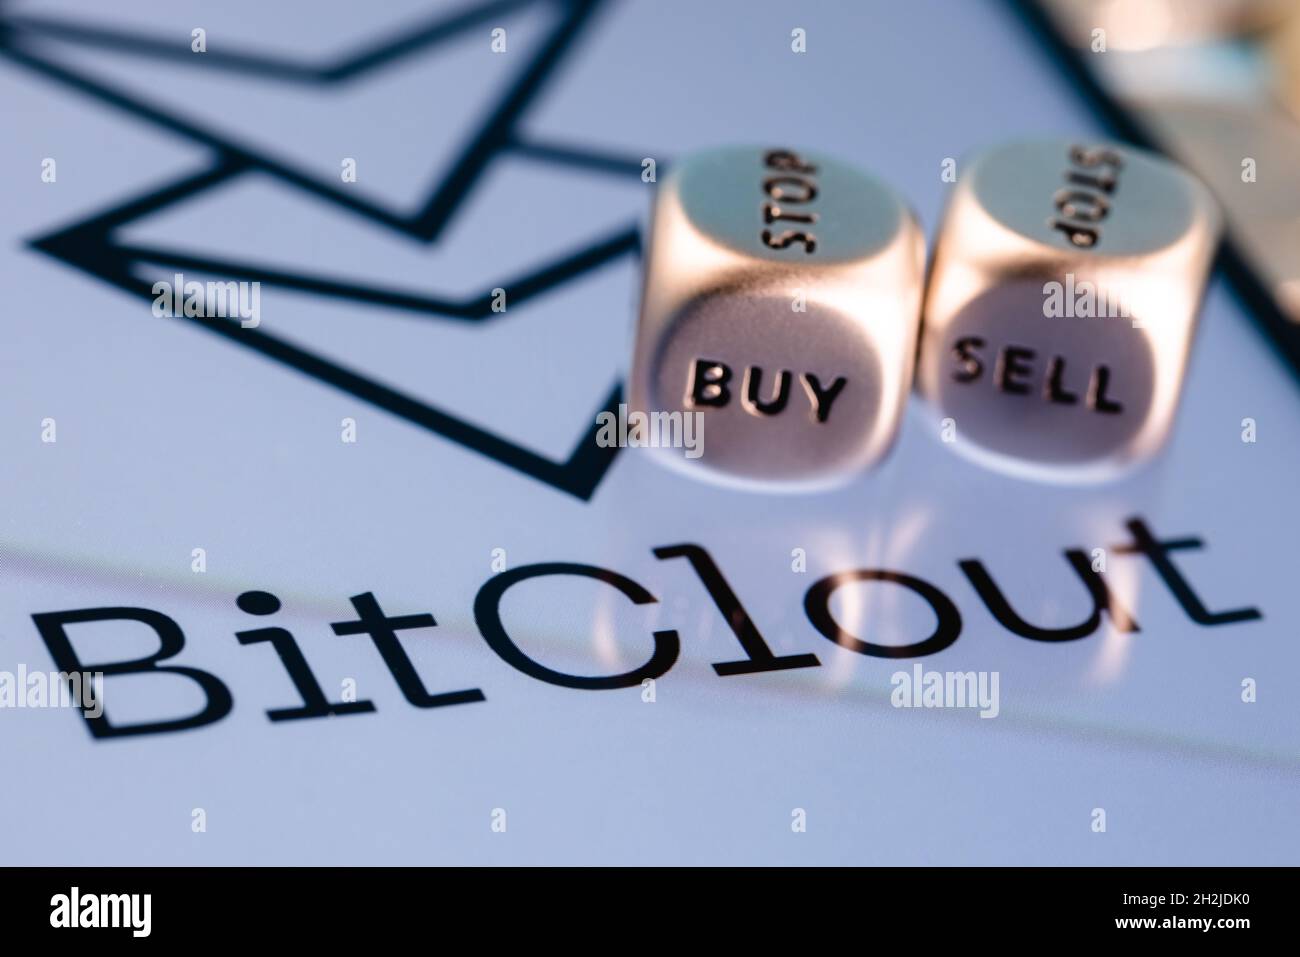 Bitclout è un social network criptato che ti permette di speculare su persone e pubblicazioni con soldi veri Foto Stock